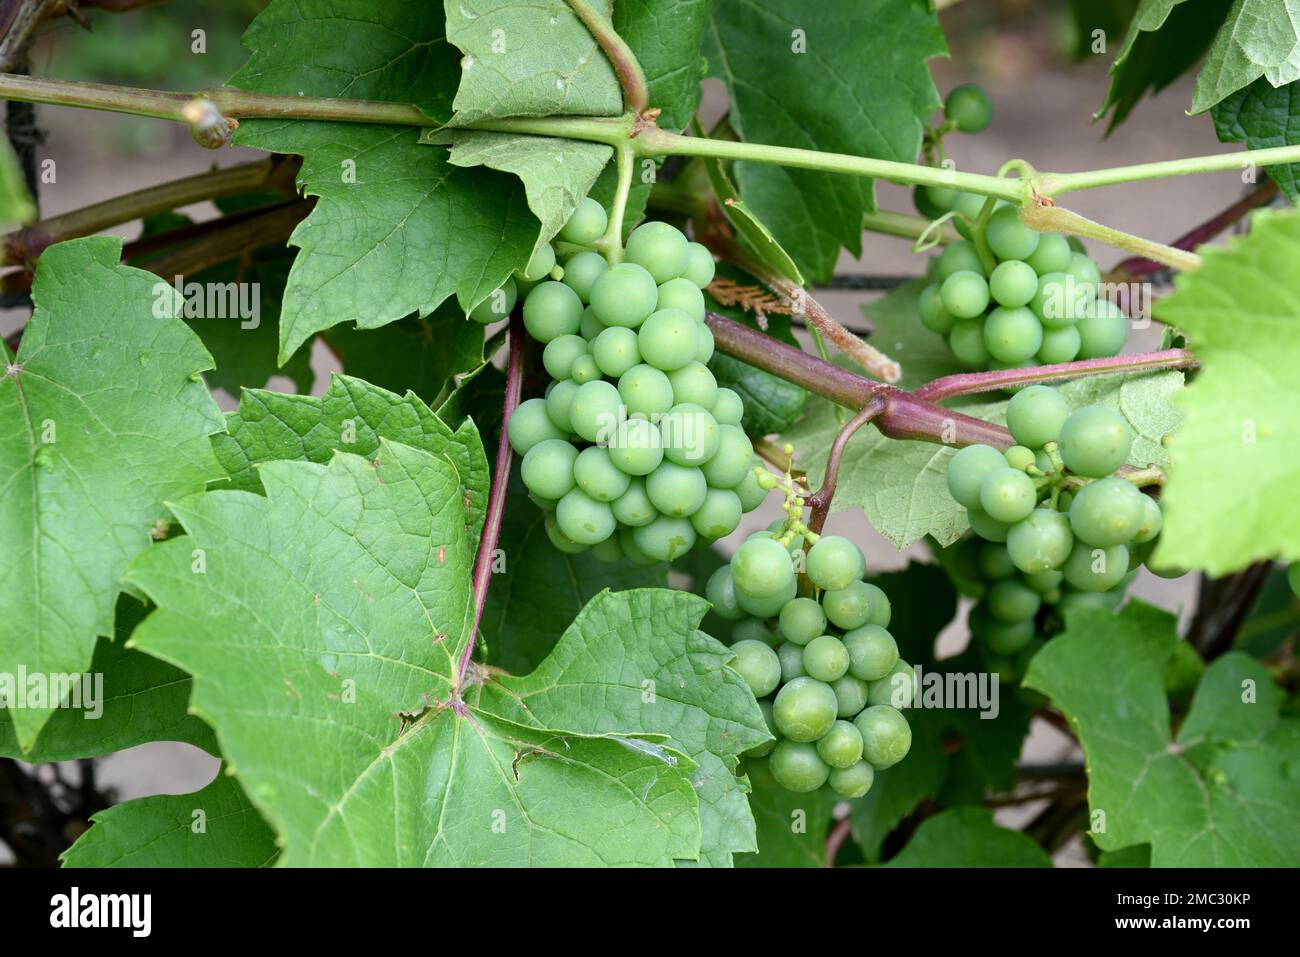 Weisswein, Riesling Vitis vinifera, ist ein Wein der hauptsaechlich im Rheingau Hessen angebaut wird. White wine, Riesling Vitis vinifera, is a wine t Stock Photo